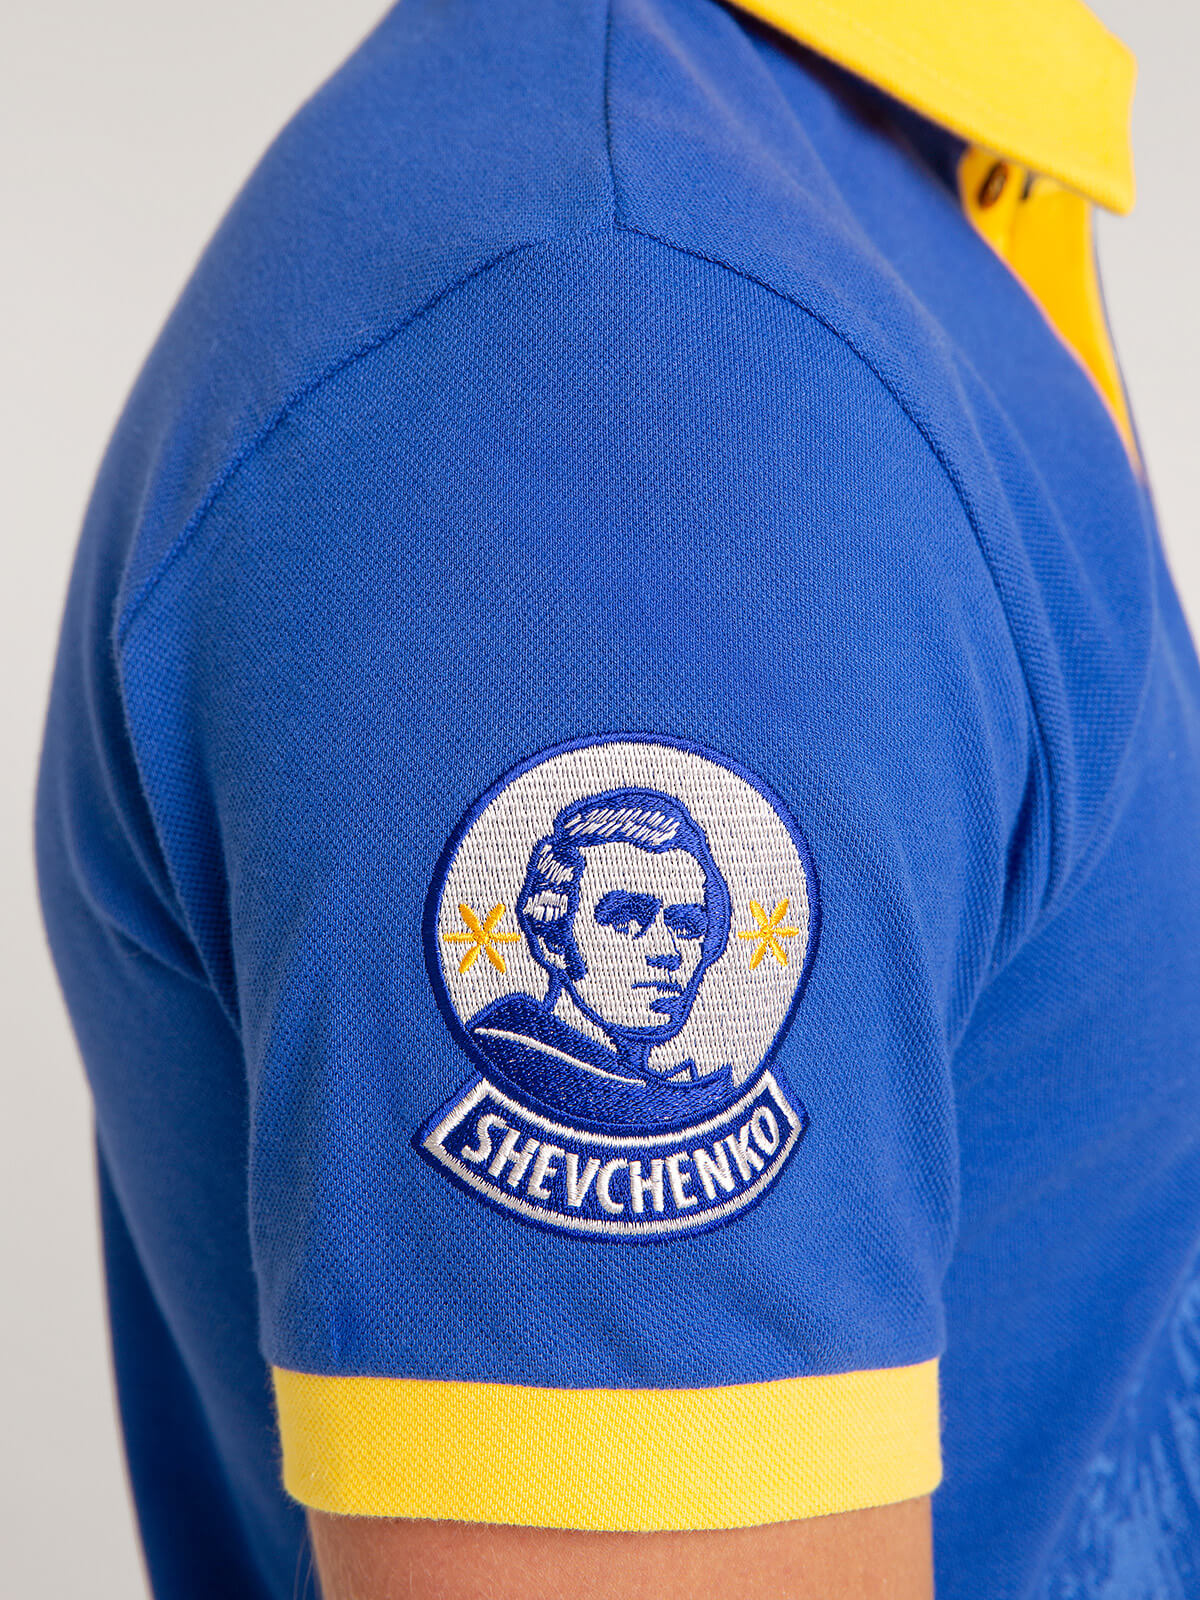 Men's Polo Shirt Taras Shevchenko. Color navy blue. 2.